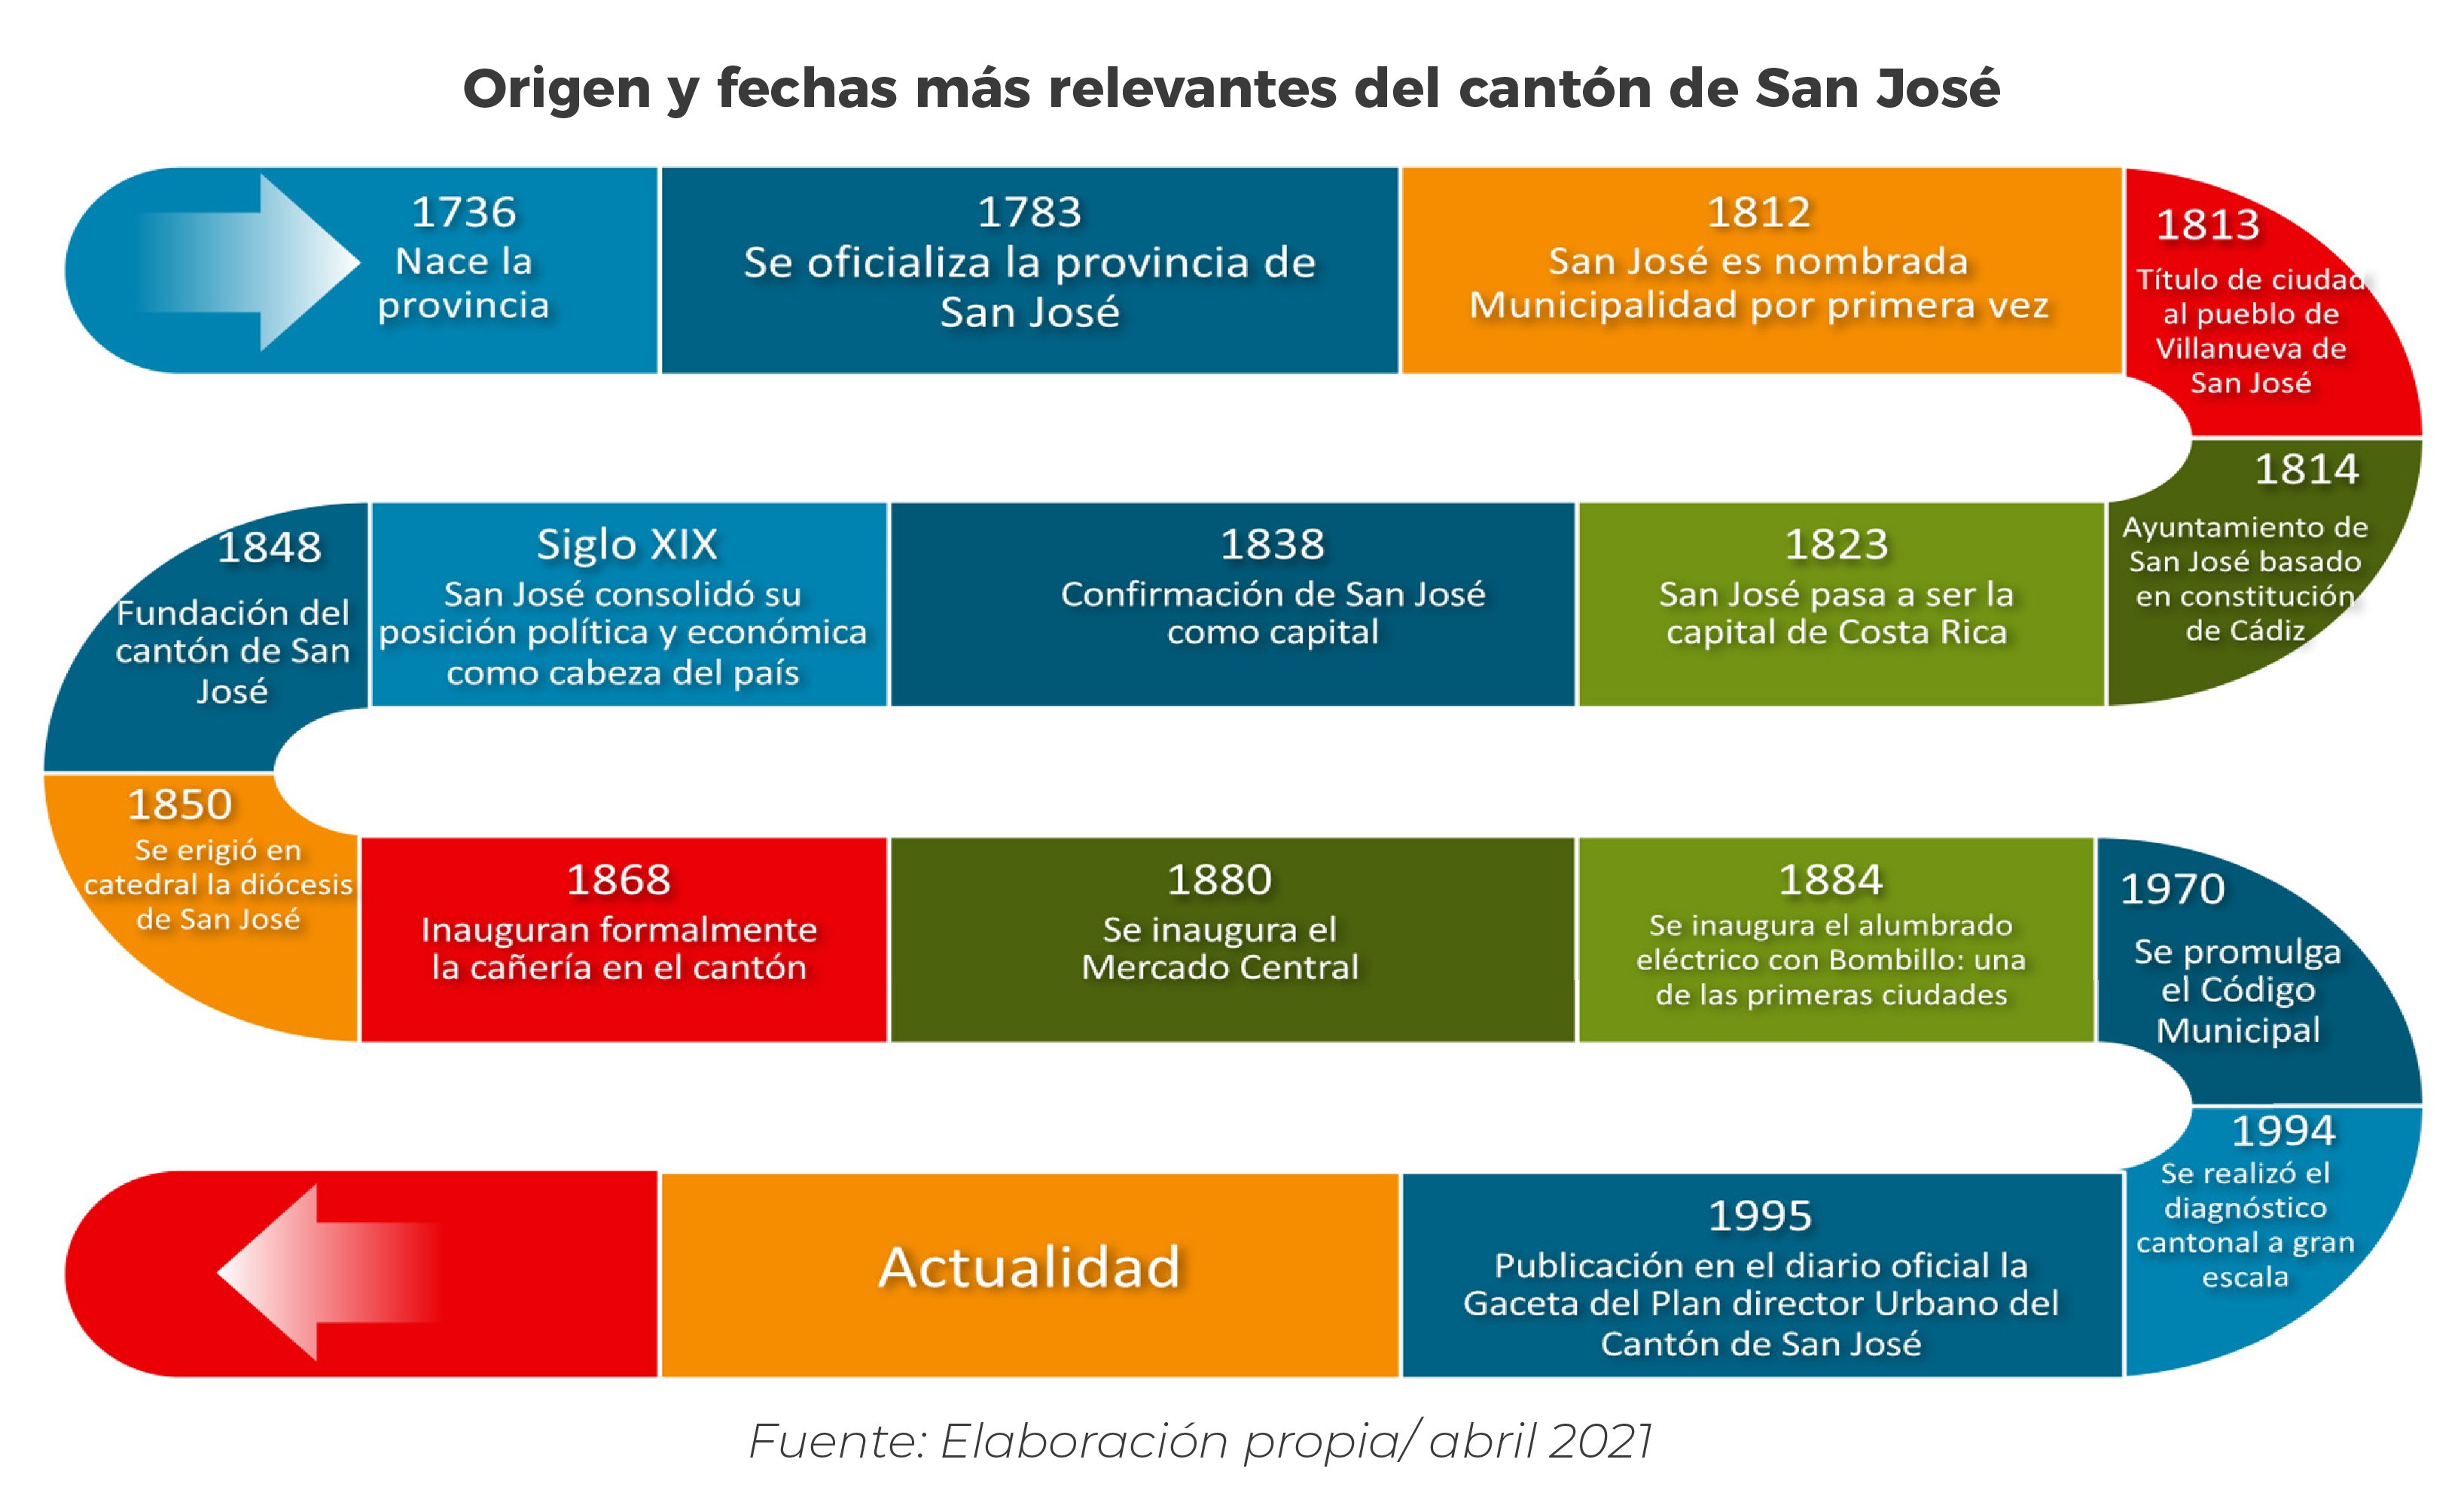 Origen y fechas mas relevantes del Cantón de San José